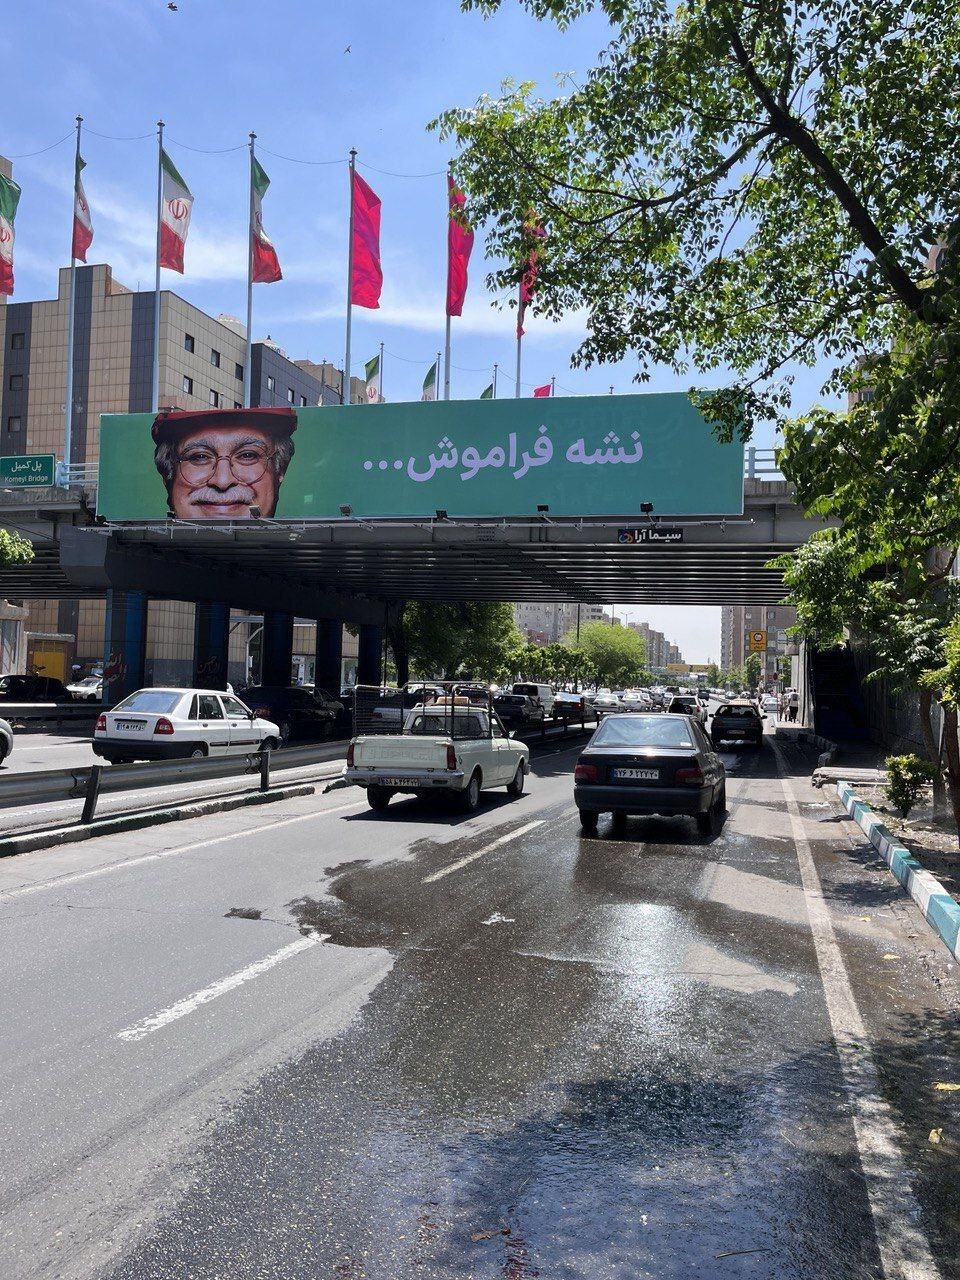 شکل و شمایل متفاوت یک بیلبورد در تهران